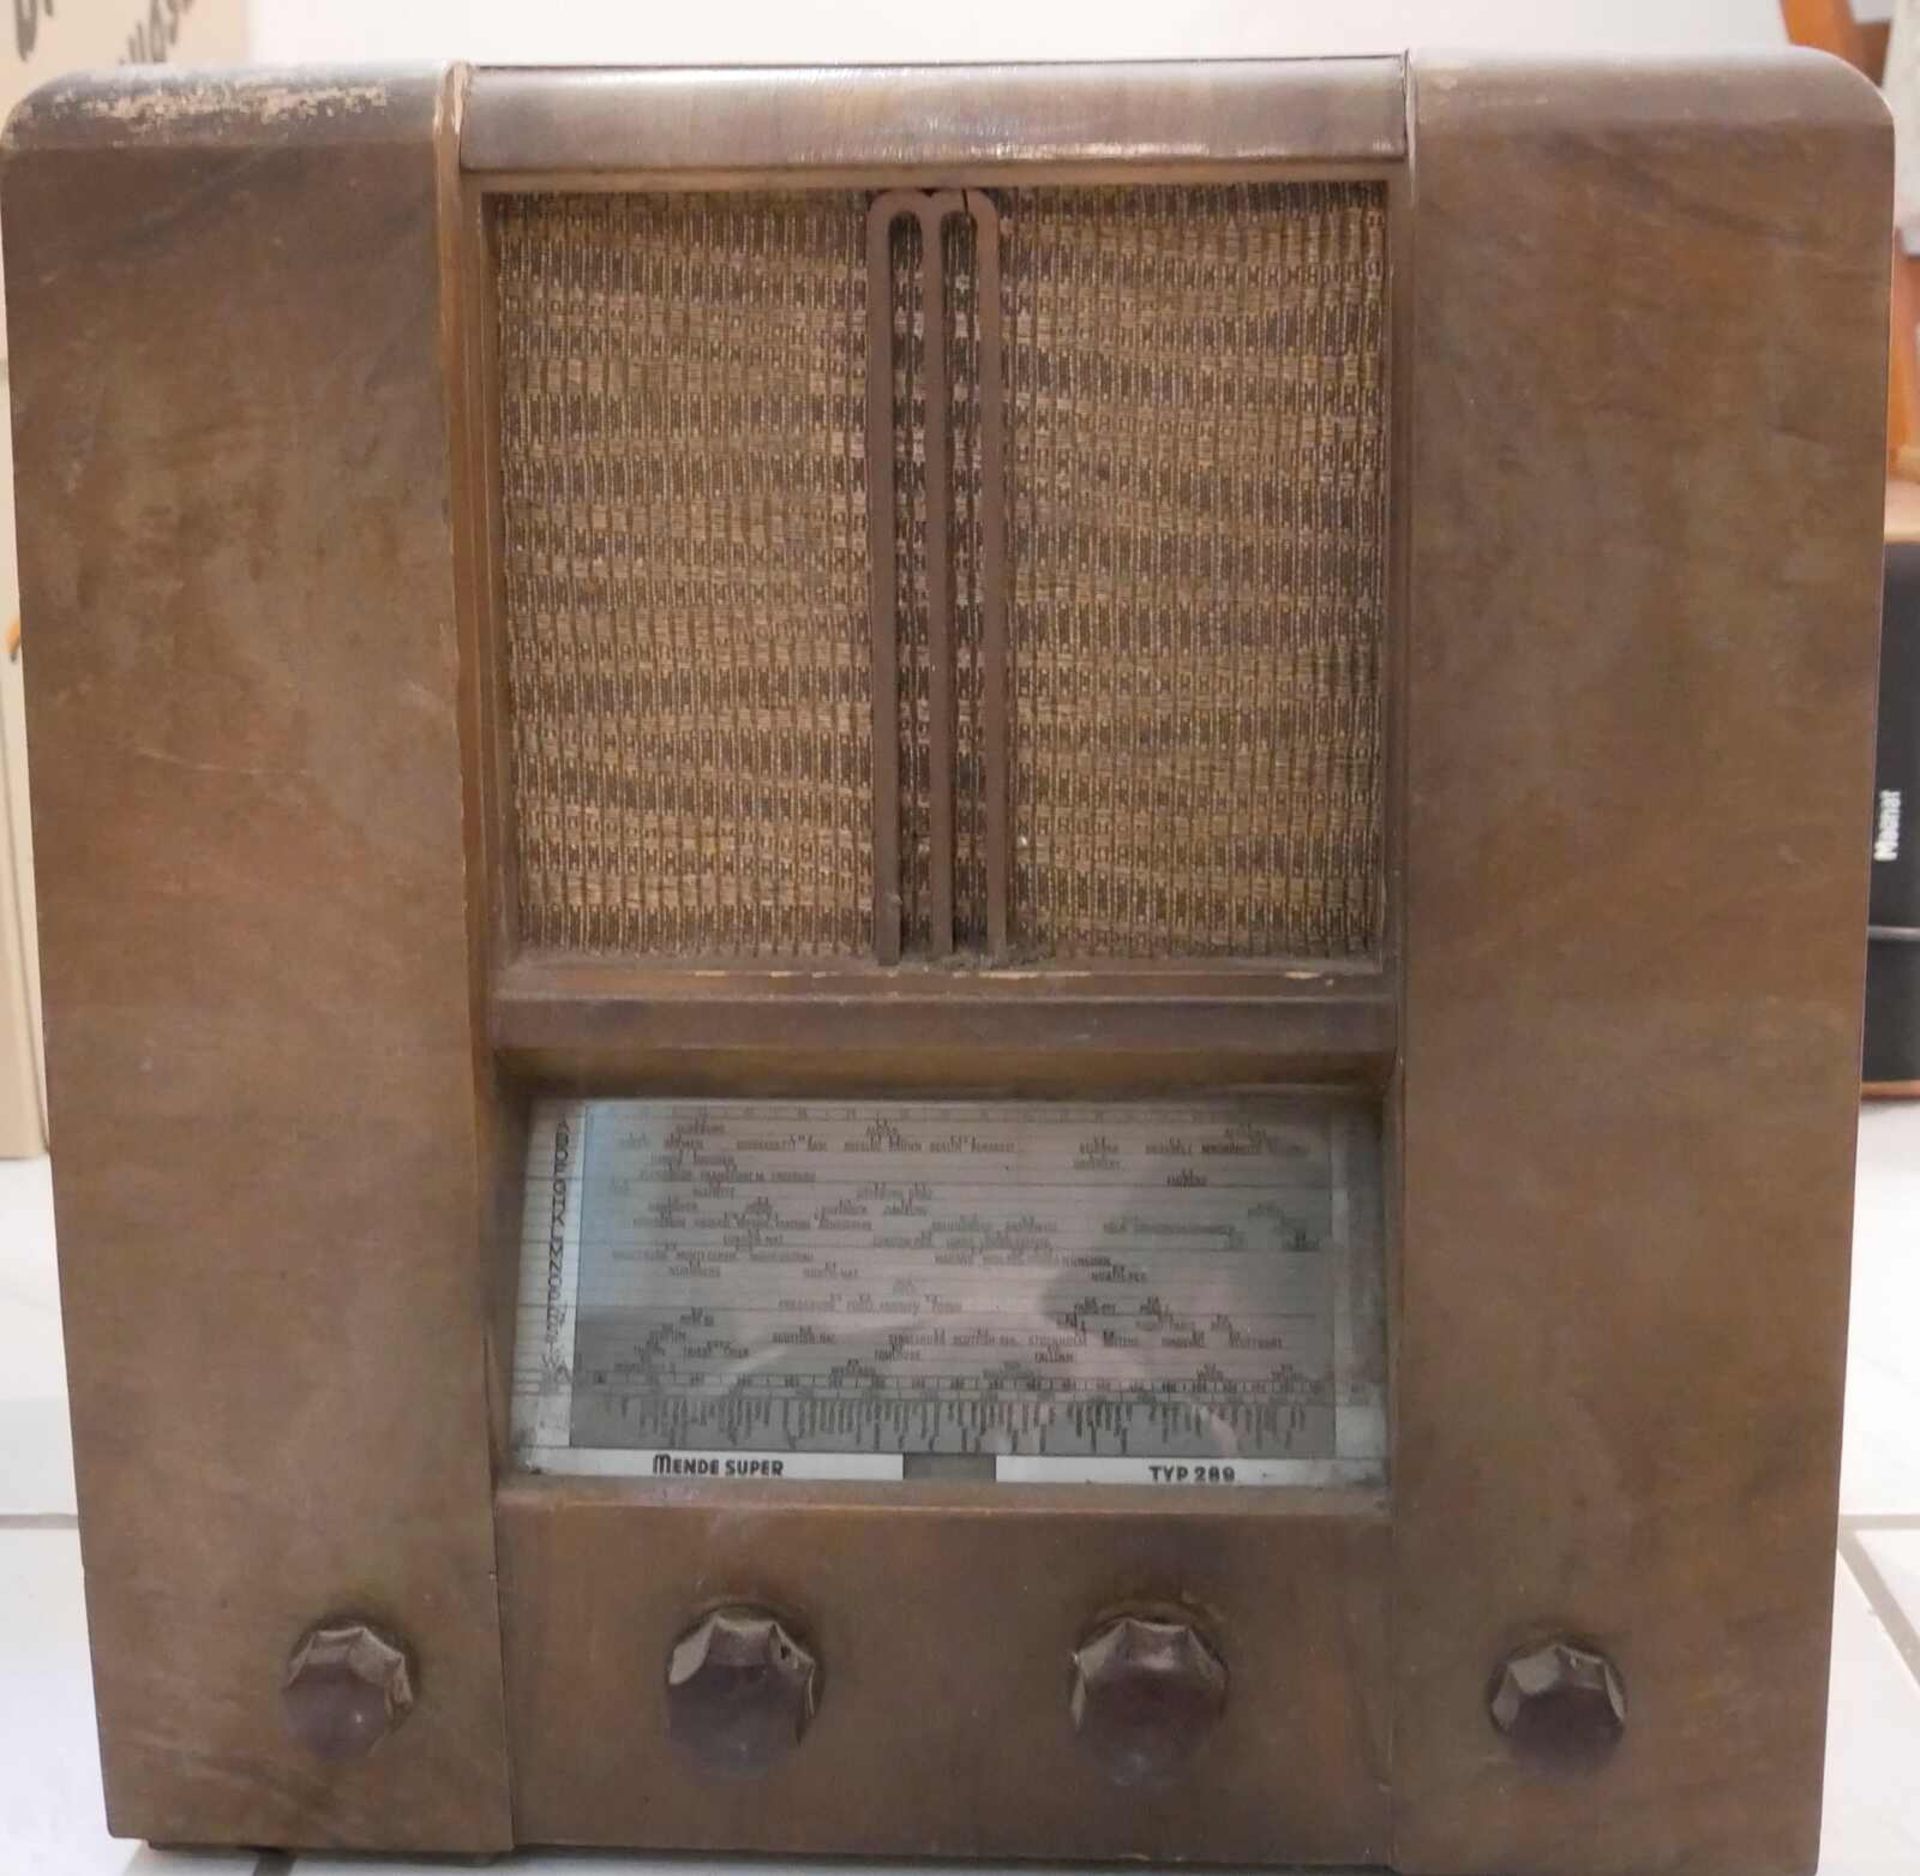 Altes Radio Mende Super Typ 289, Funktion nicht geprüft. - Image 3 of 3